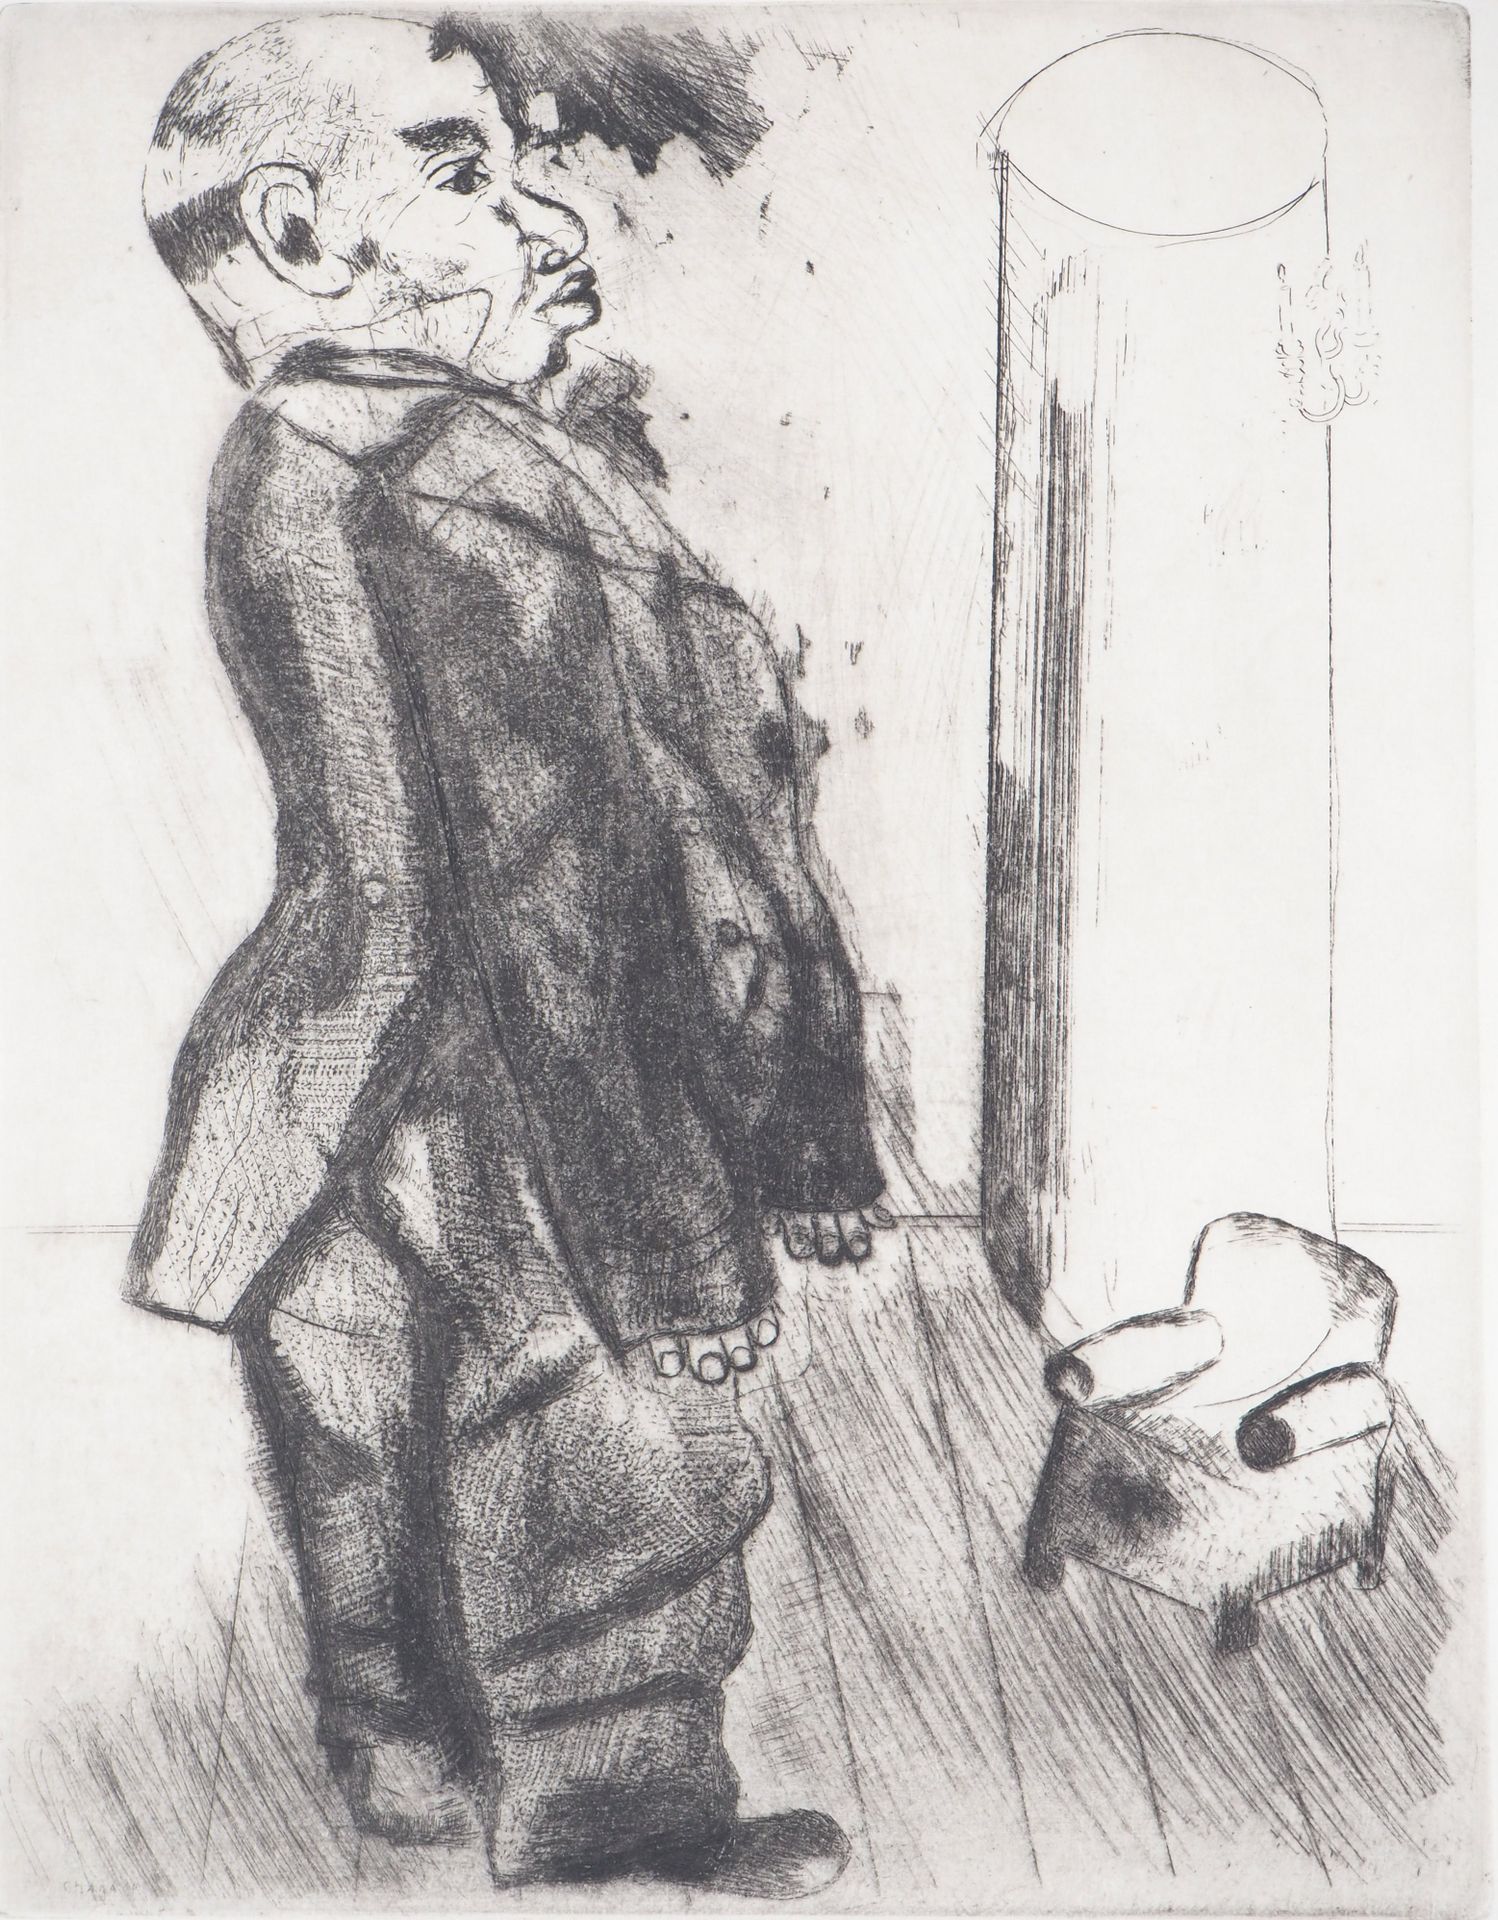 Marc Chagall 马克-查戈尔

扶手椅旁的索巴切维奇，1948年

日本纸上的原始蚀刻画

版面左下方有签名

36.7 x 28 cm

信息 :这&hellip;